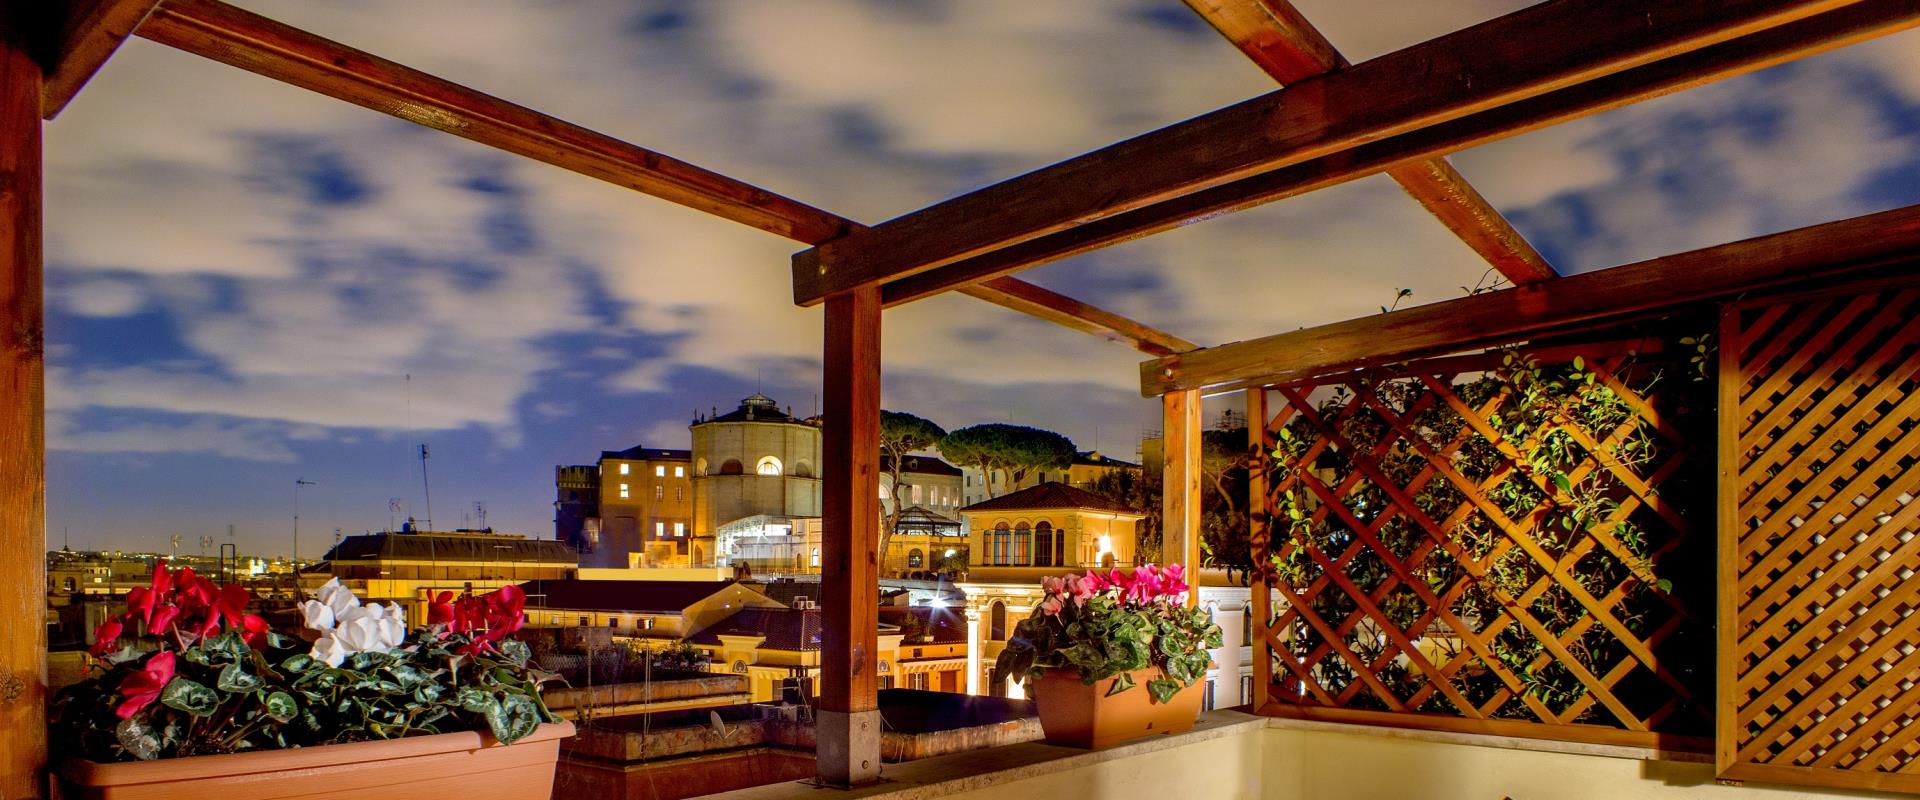 Benvenuti al Best Western Plus Hotel Spring House: qualità e servizi nel centro di Roma